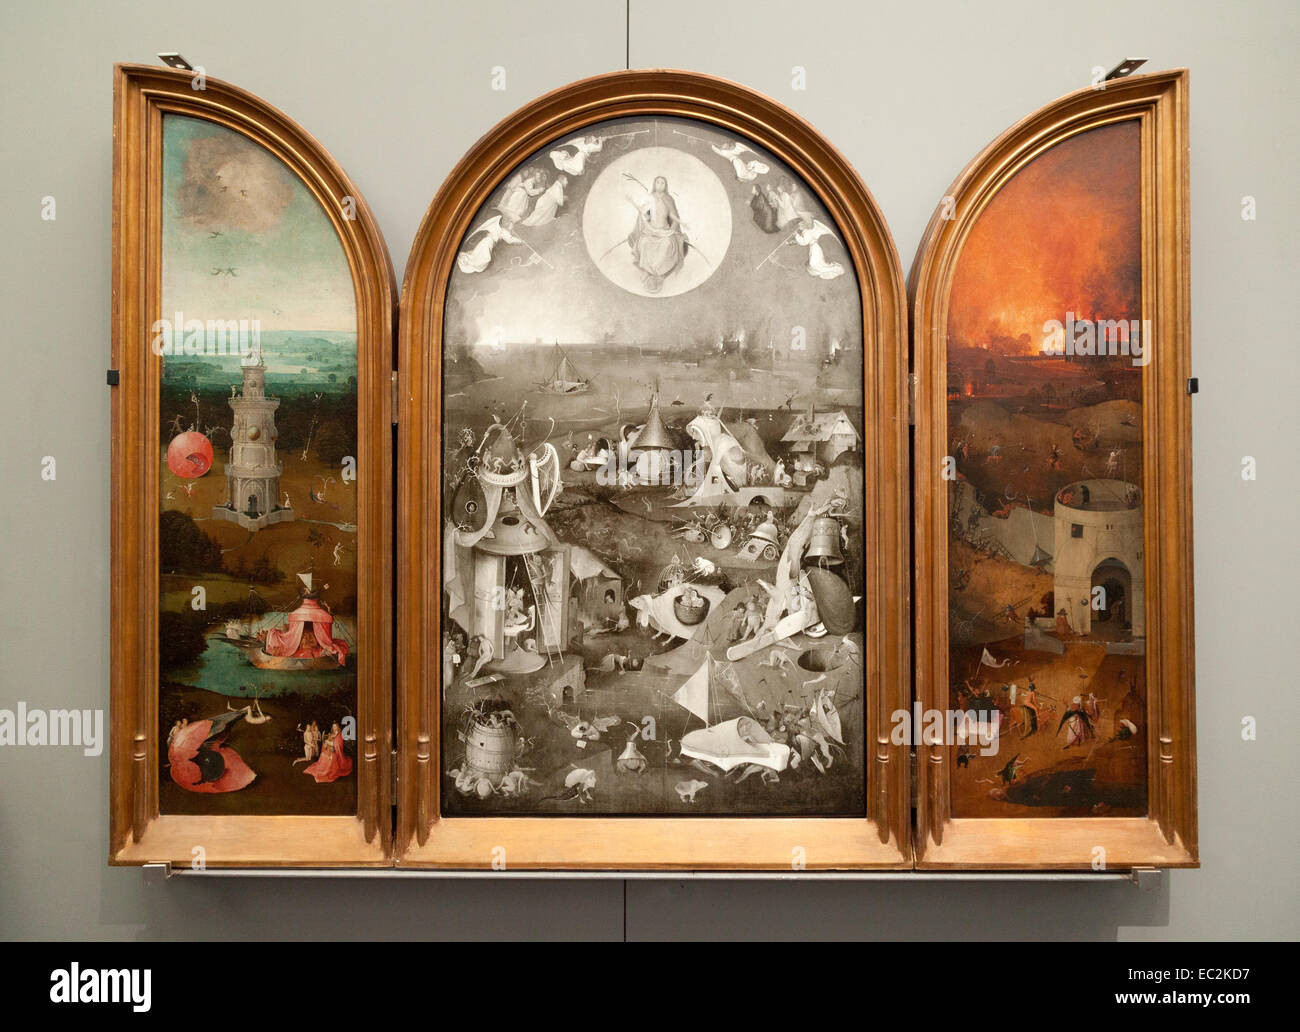 ' L'ultima sentenza ' olio su pannello,1500-1505,XVI secolo l'arte, dall'inizio artista olandese, Hieronymus Bosch, Groeninge Museum, Bruges, Belgio Foto Stock